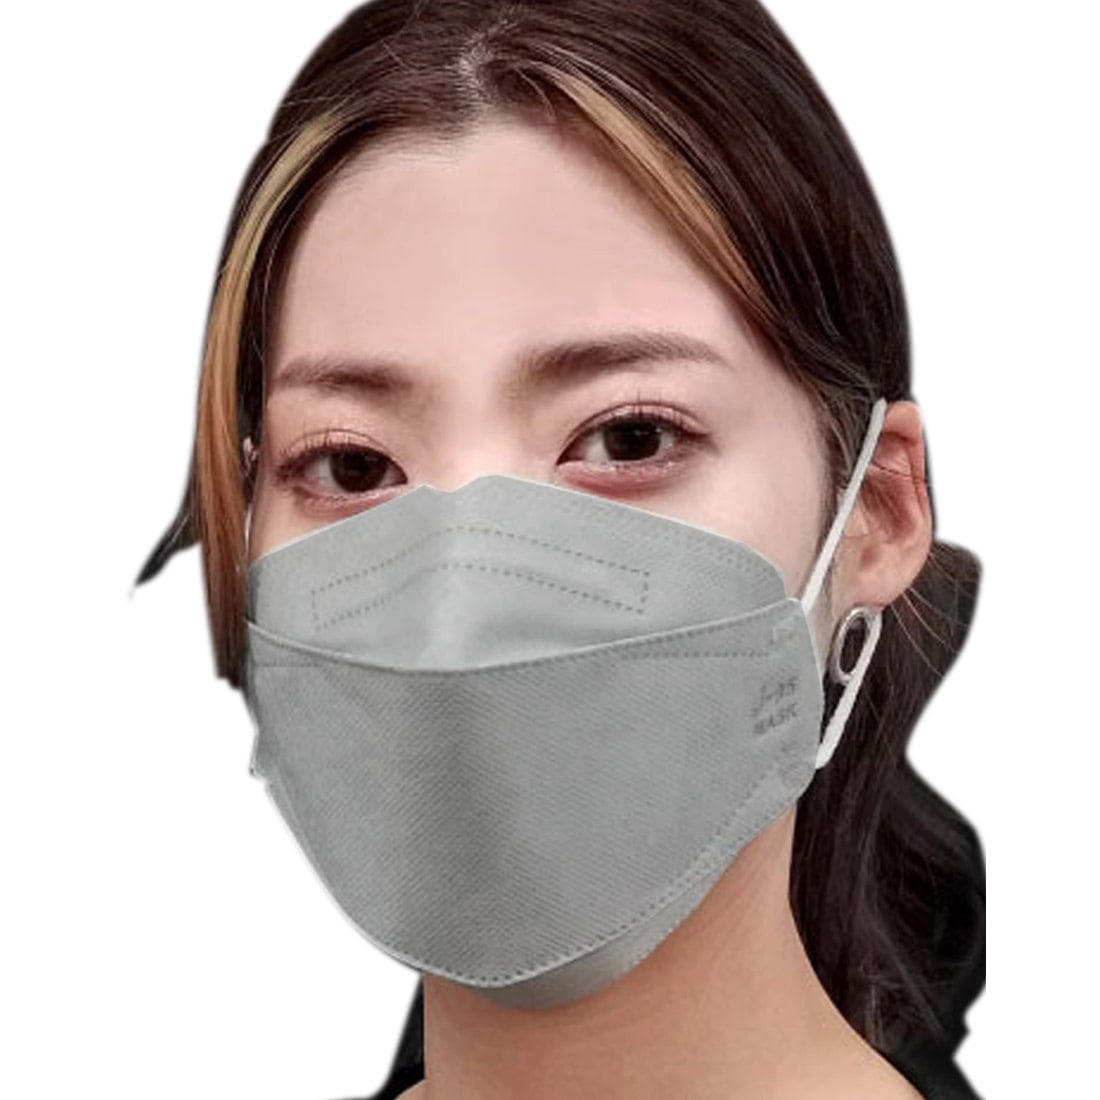 不織布マスク 立体  血色 カラー 日本製 J-95 サージカルマスク 30枚入 標準 全11色 医療用 JIS規格適合 4層 飛沫 花粉 PM2.5 個包装 おしゃれ 通年用 大人 女性 男性 標準 ライトグレー